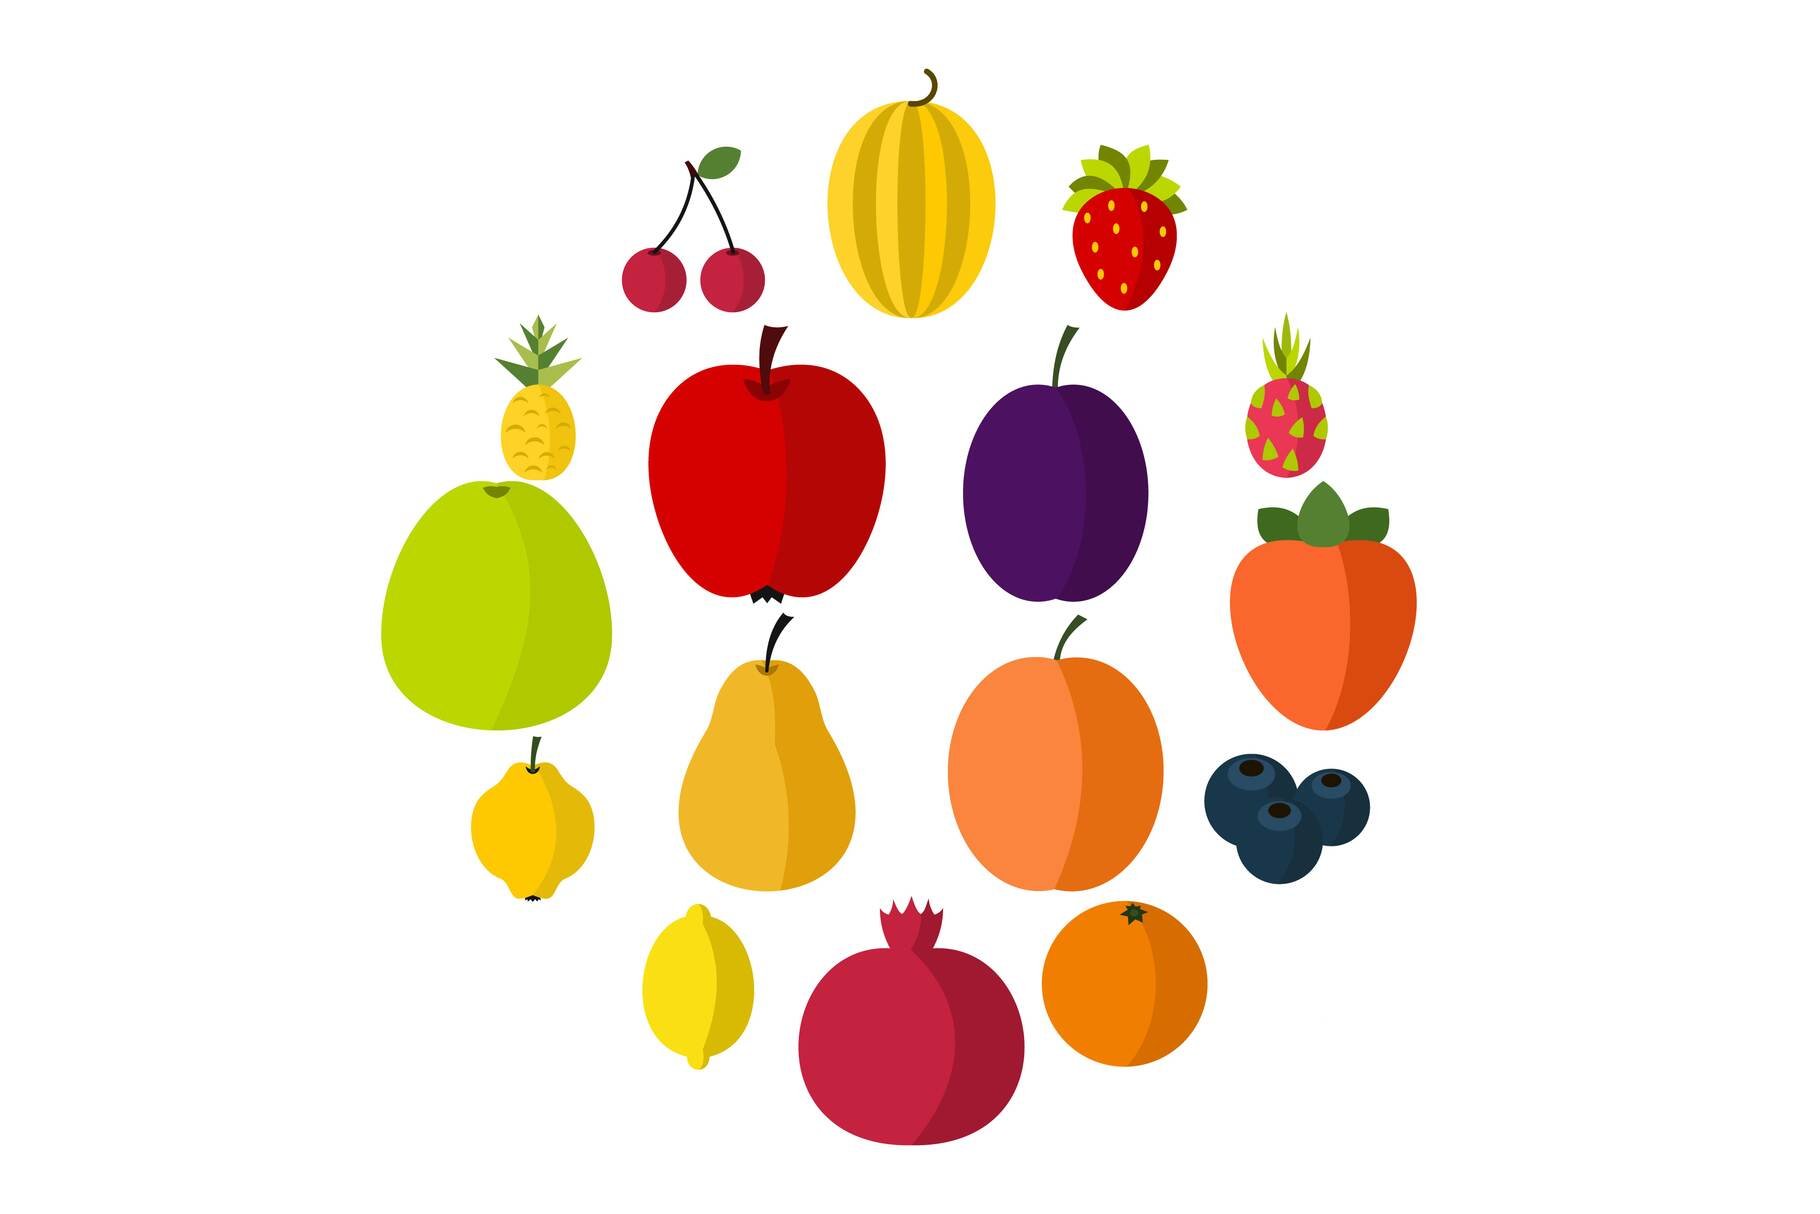 Fruit icons set, flat style cover image.